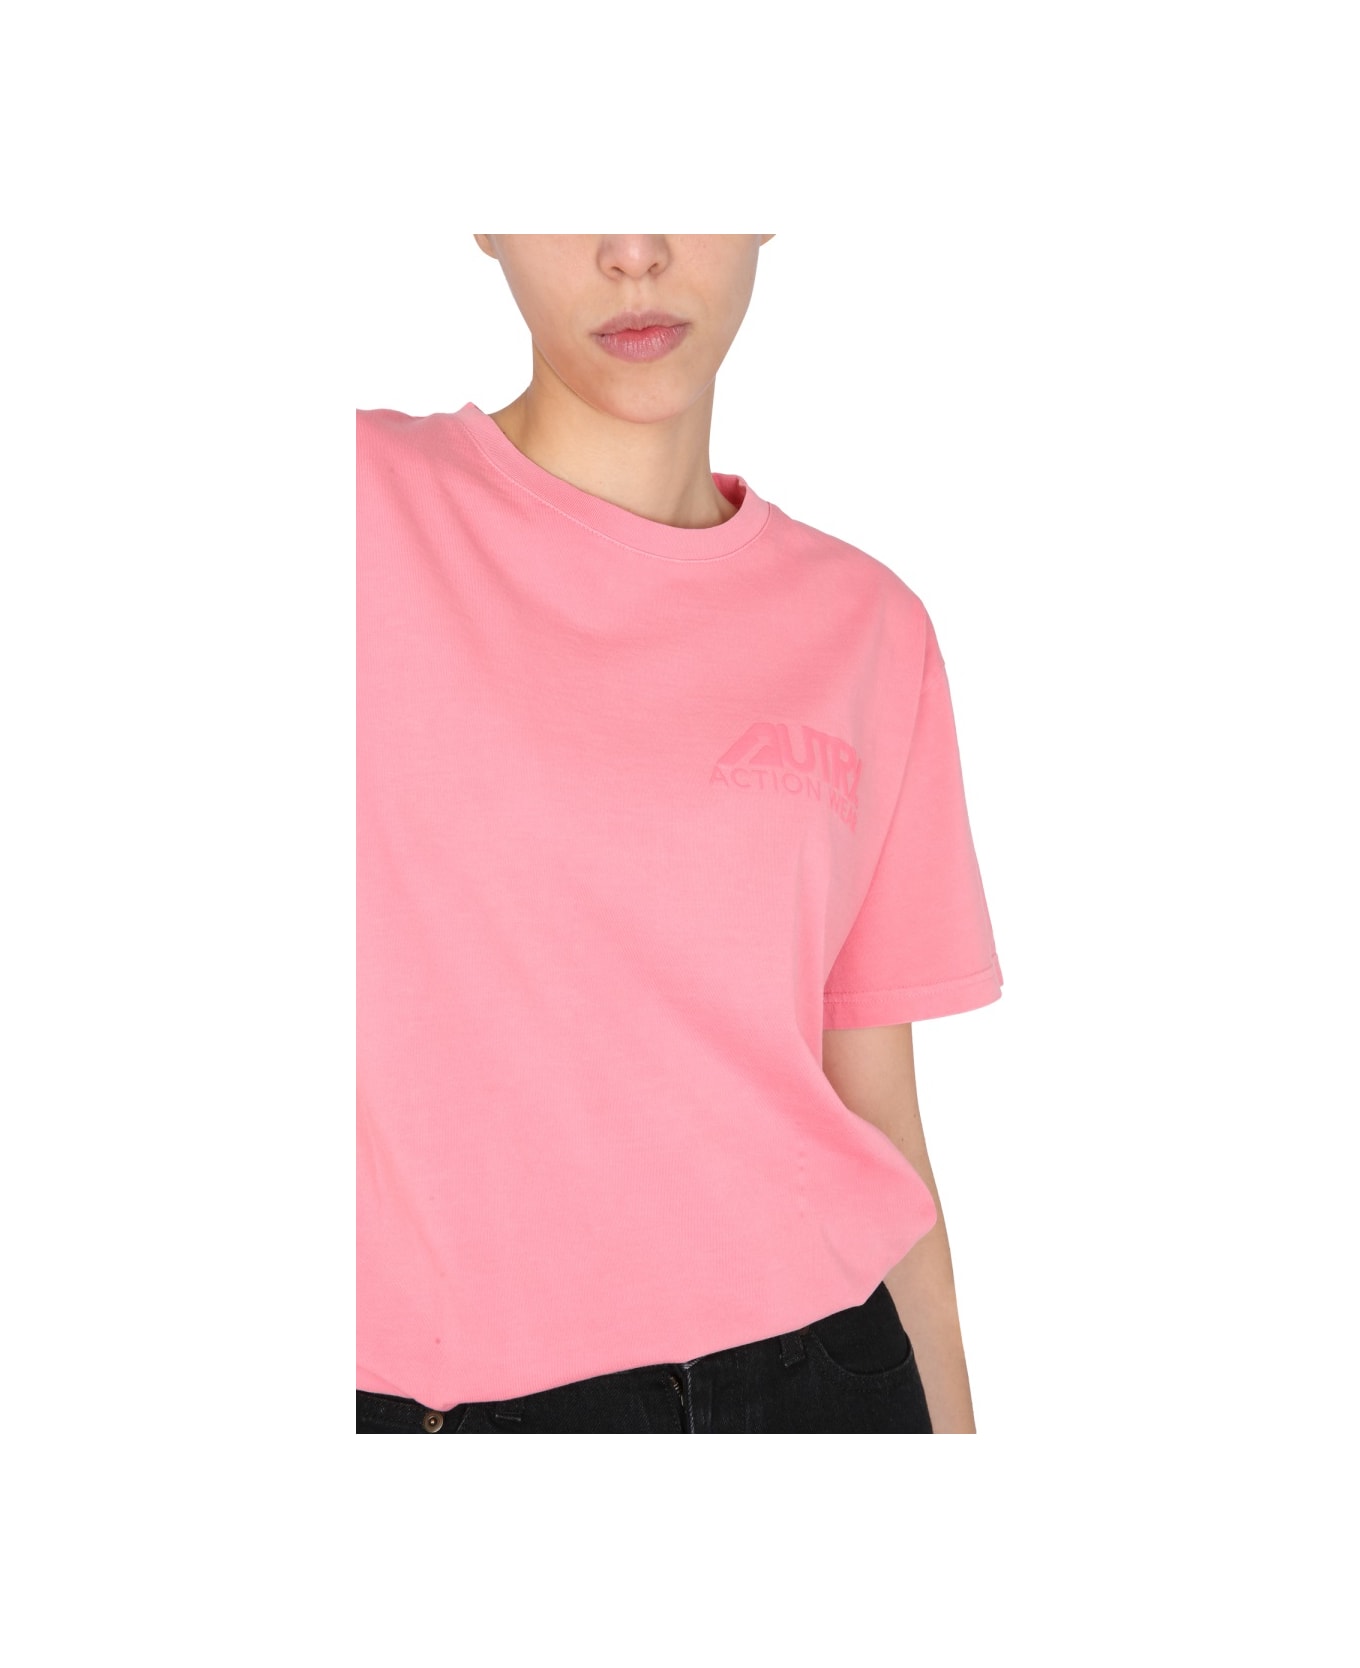 Autry "sunburnt" T-shirt - PINK